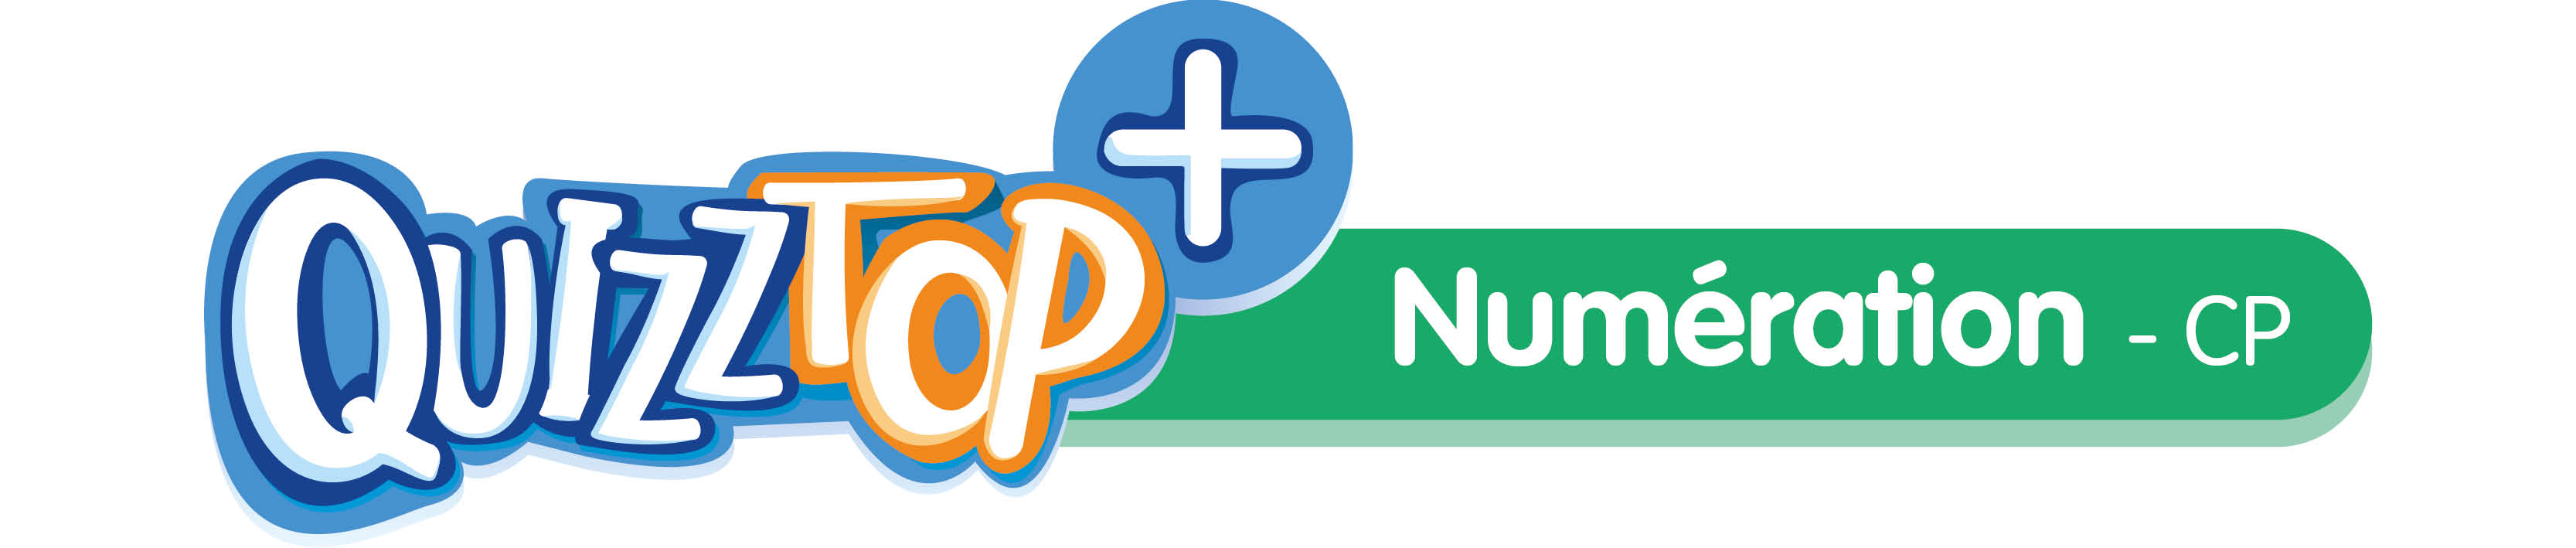 Application Quizztop+ Numération CP